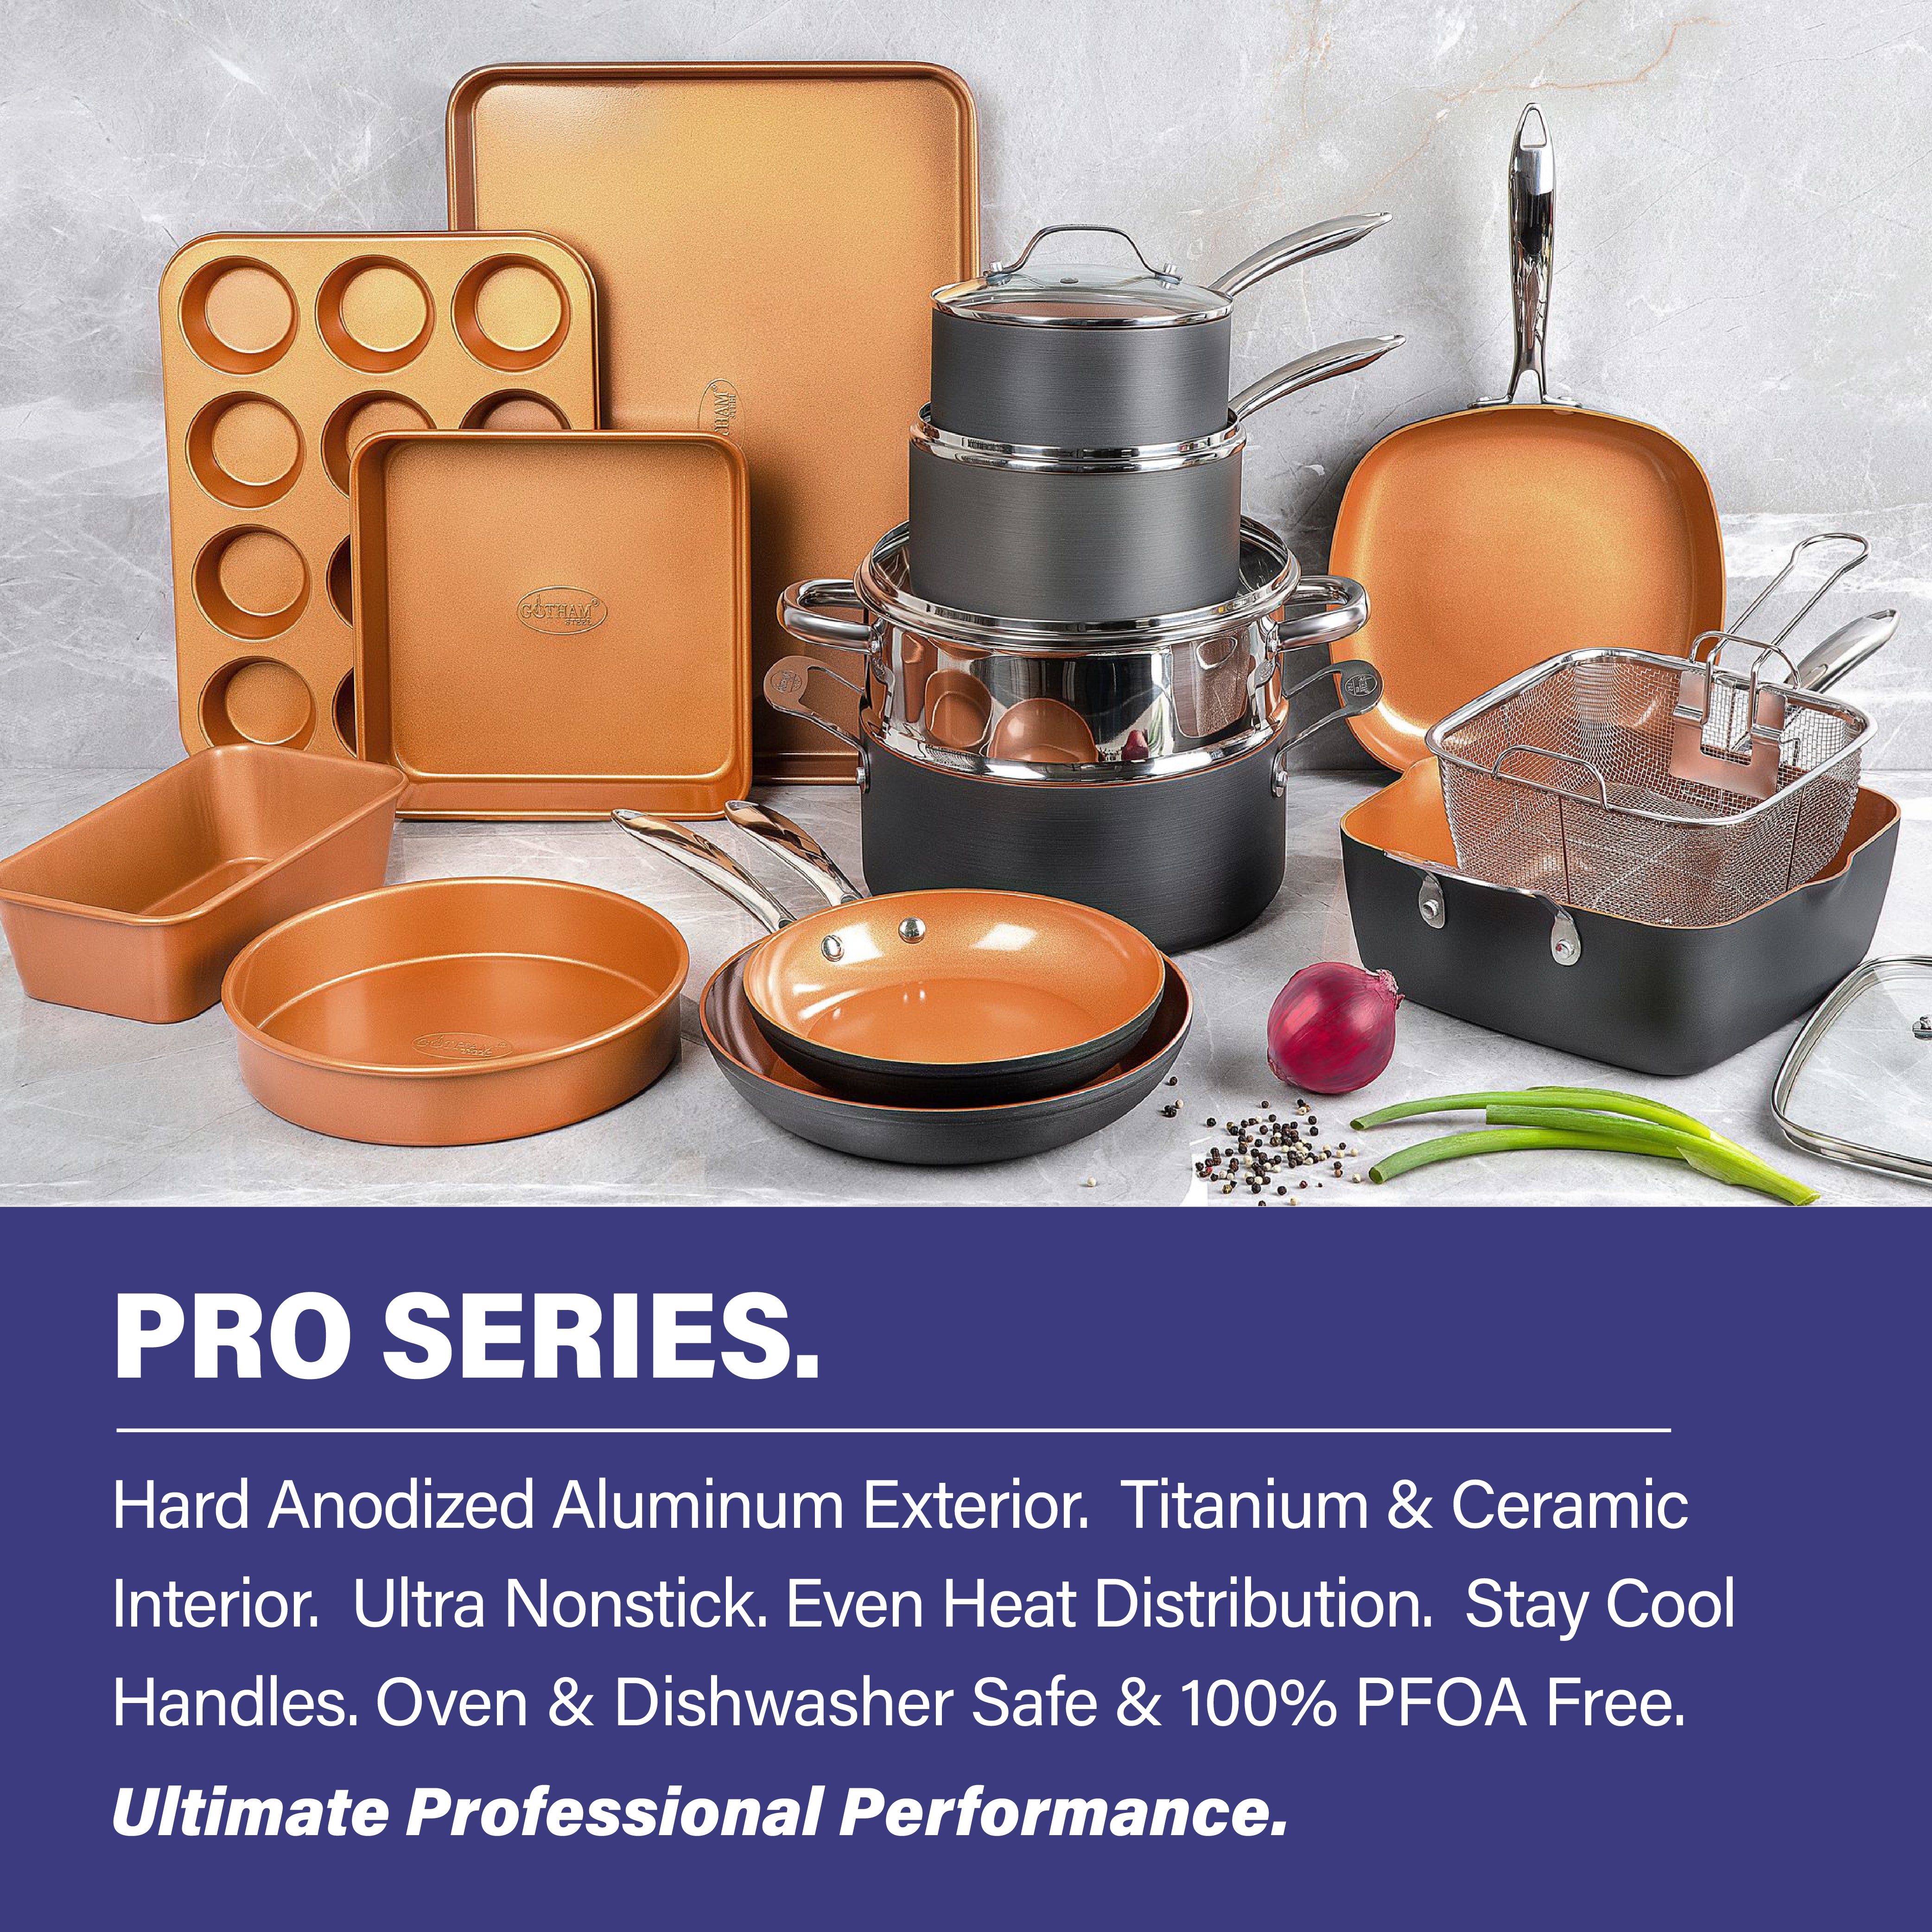 Gotham Steel Aluminum Ti-Ceramic Nonstick Cookware Review